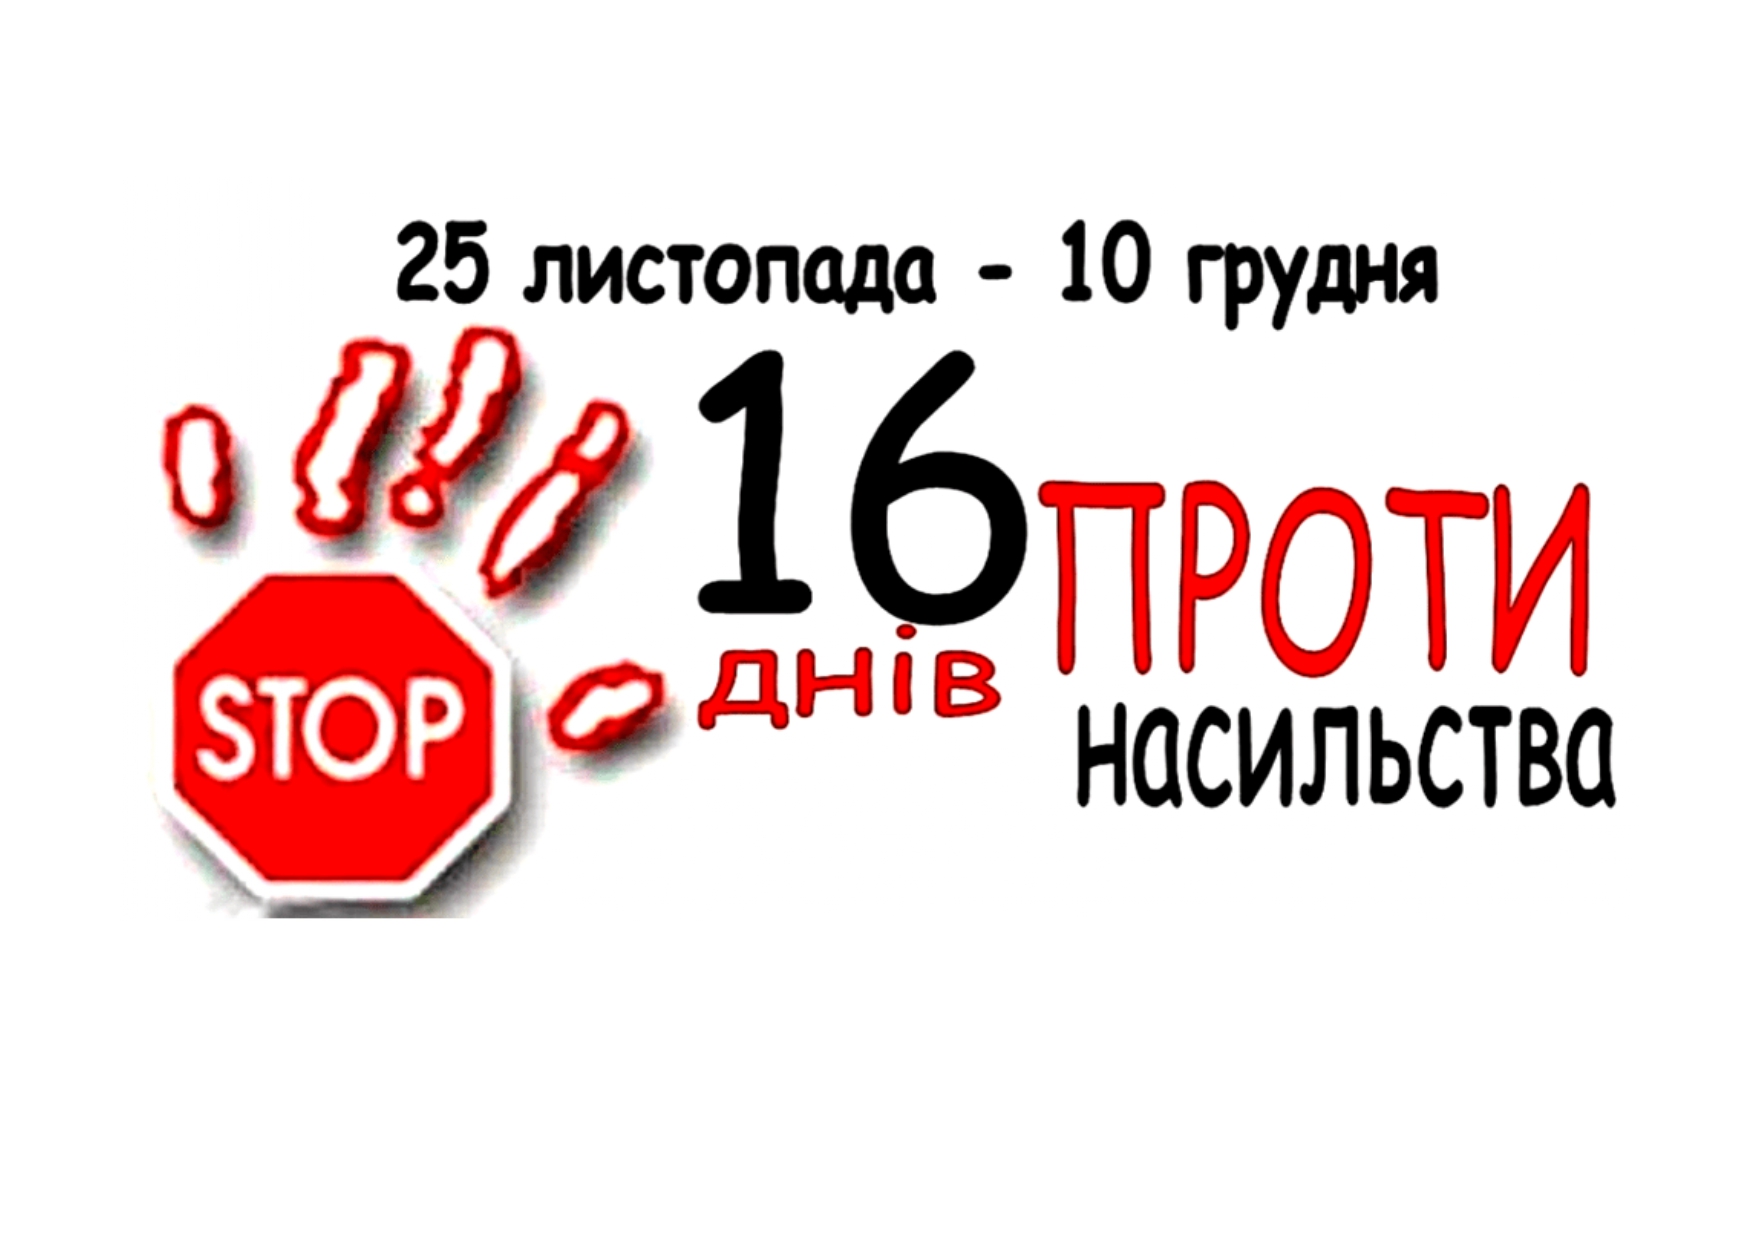 З початку року  понад 3 тисячі  житомирян зверталися до поліції  щодо вчинення домашнього насильства. У Житомирі стартує  Всеукраїнська акція  «16 днів проти насильства»